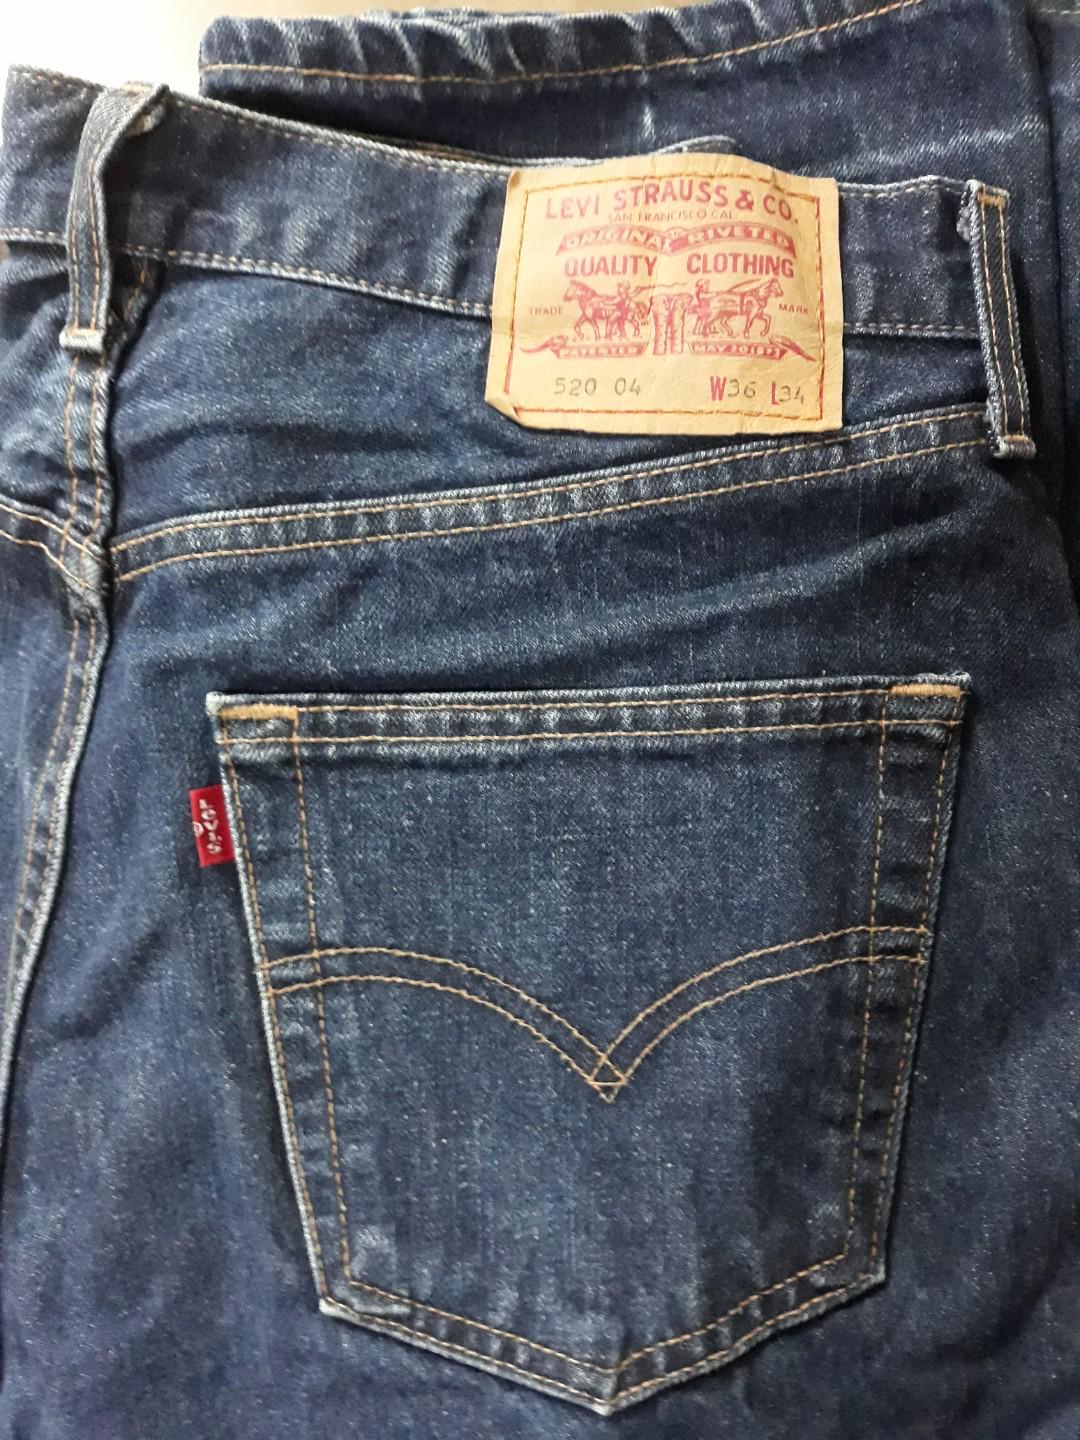 levis jeans 520